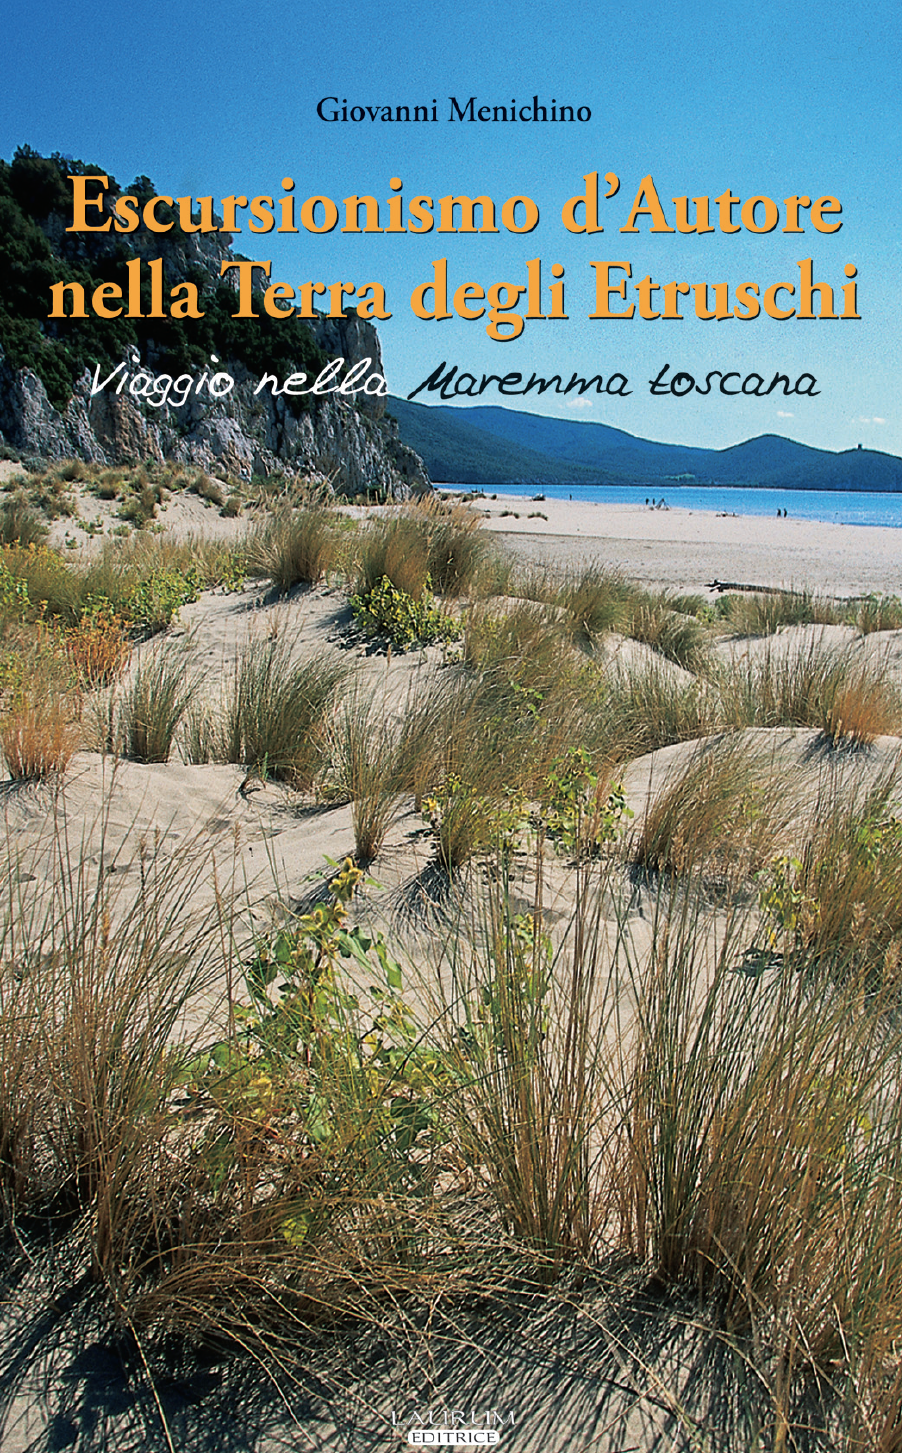 Escursionismo d’Autore nella Terra degli Etruschi - I volume: Viaggio nella Maremma toscana